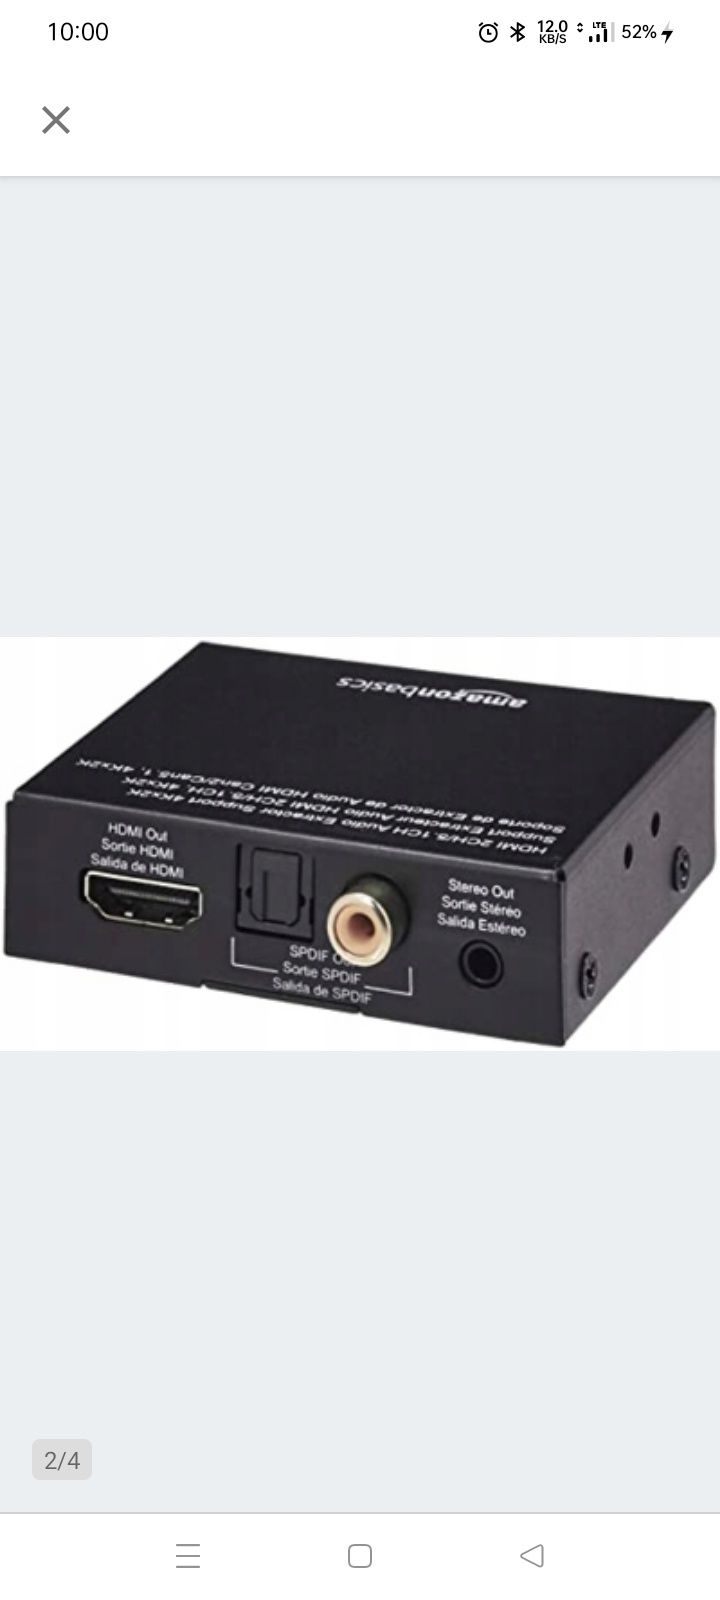 Konwerter audio HDMI na HDMI+ Amazon Basic CEHFAE0101